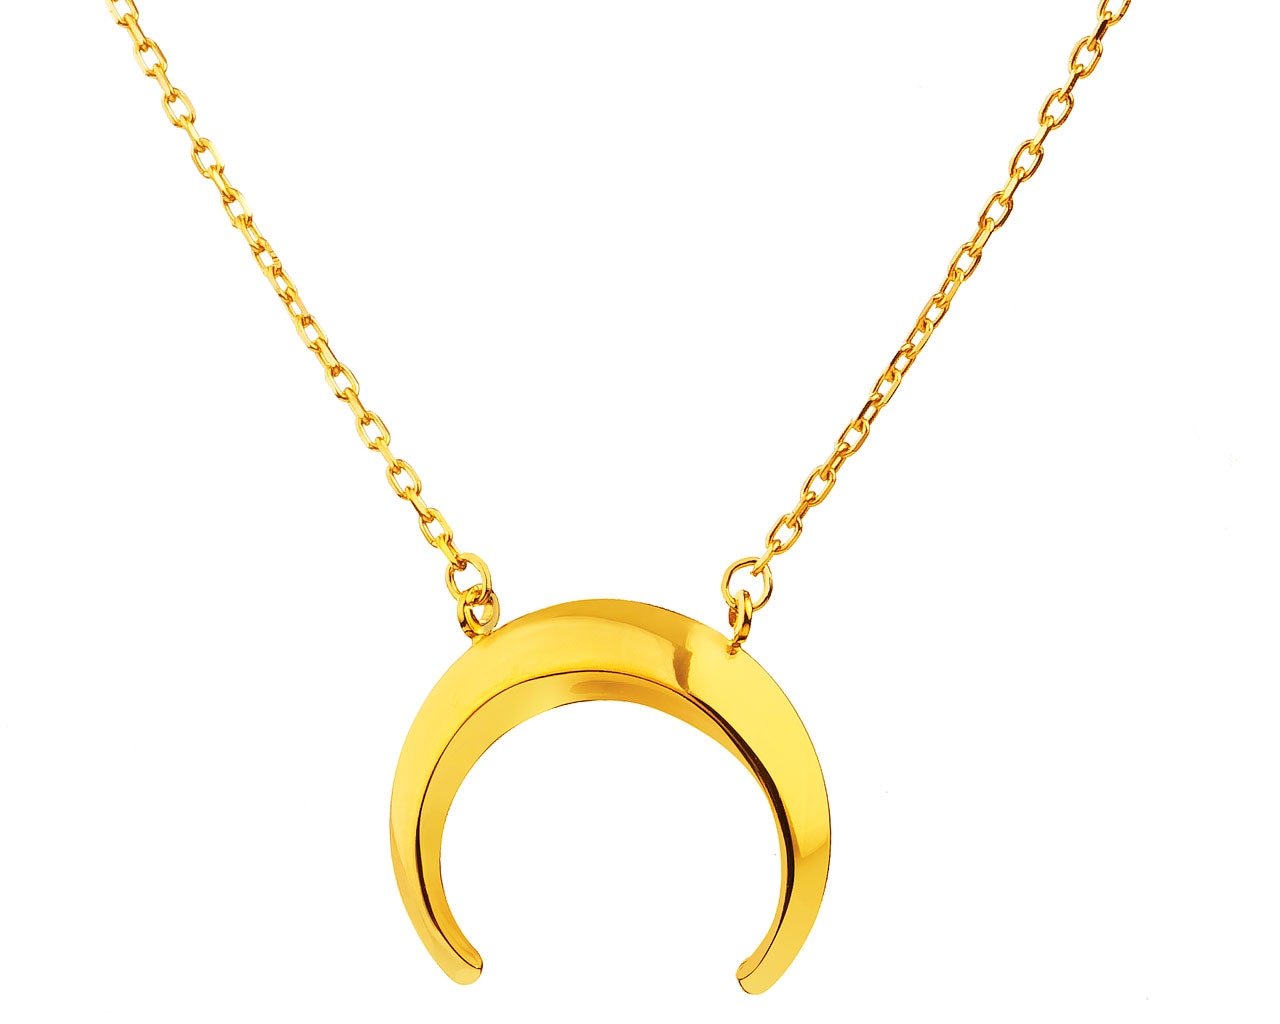 Zlatý náhrdelník, anker - půlměsíc